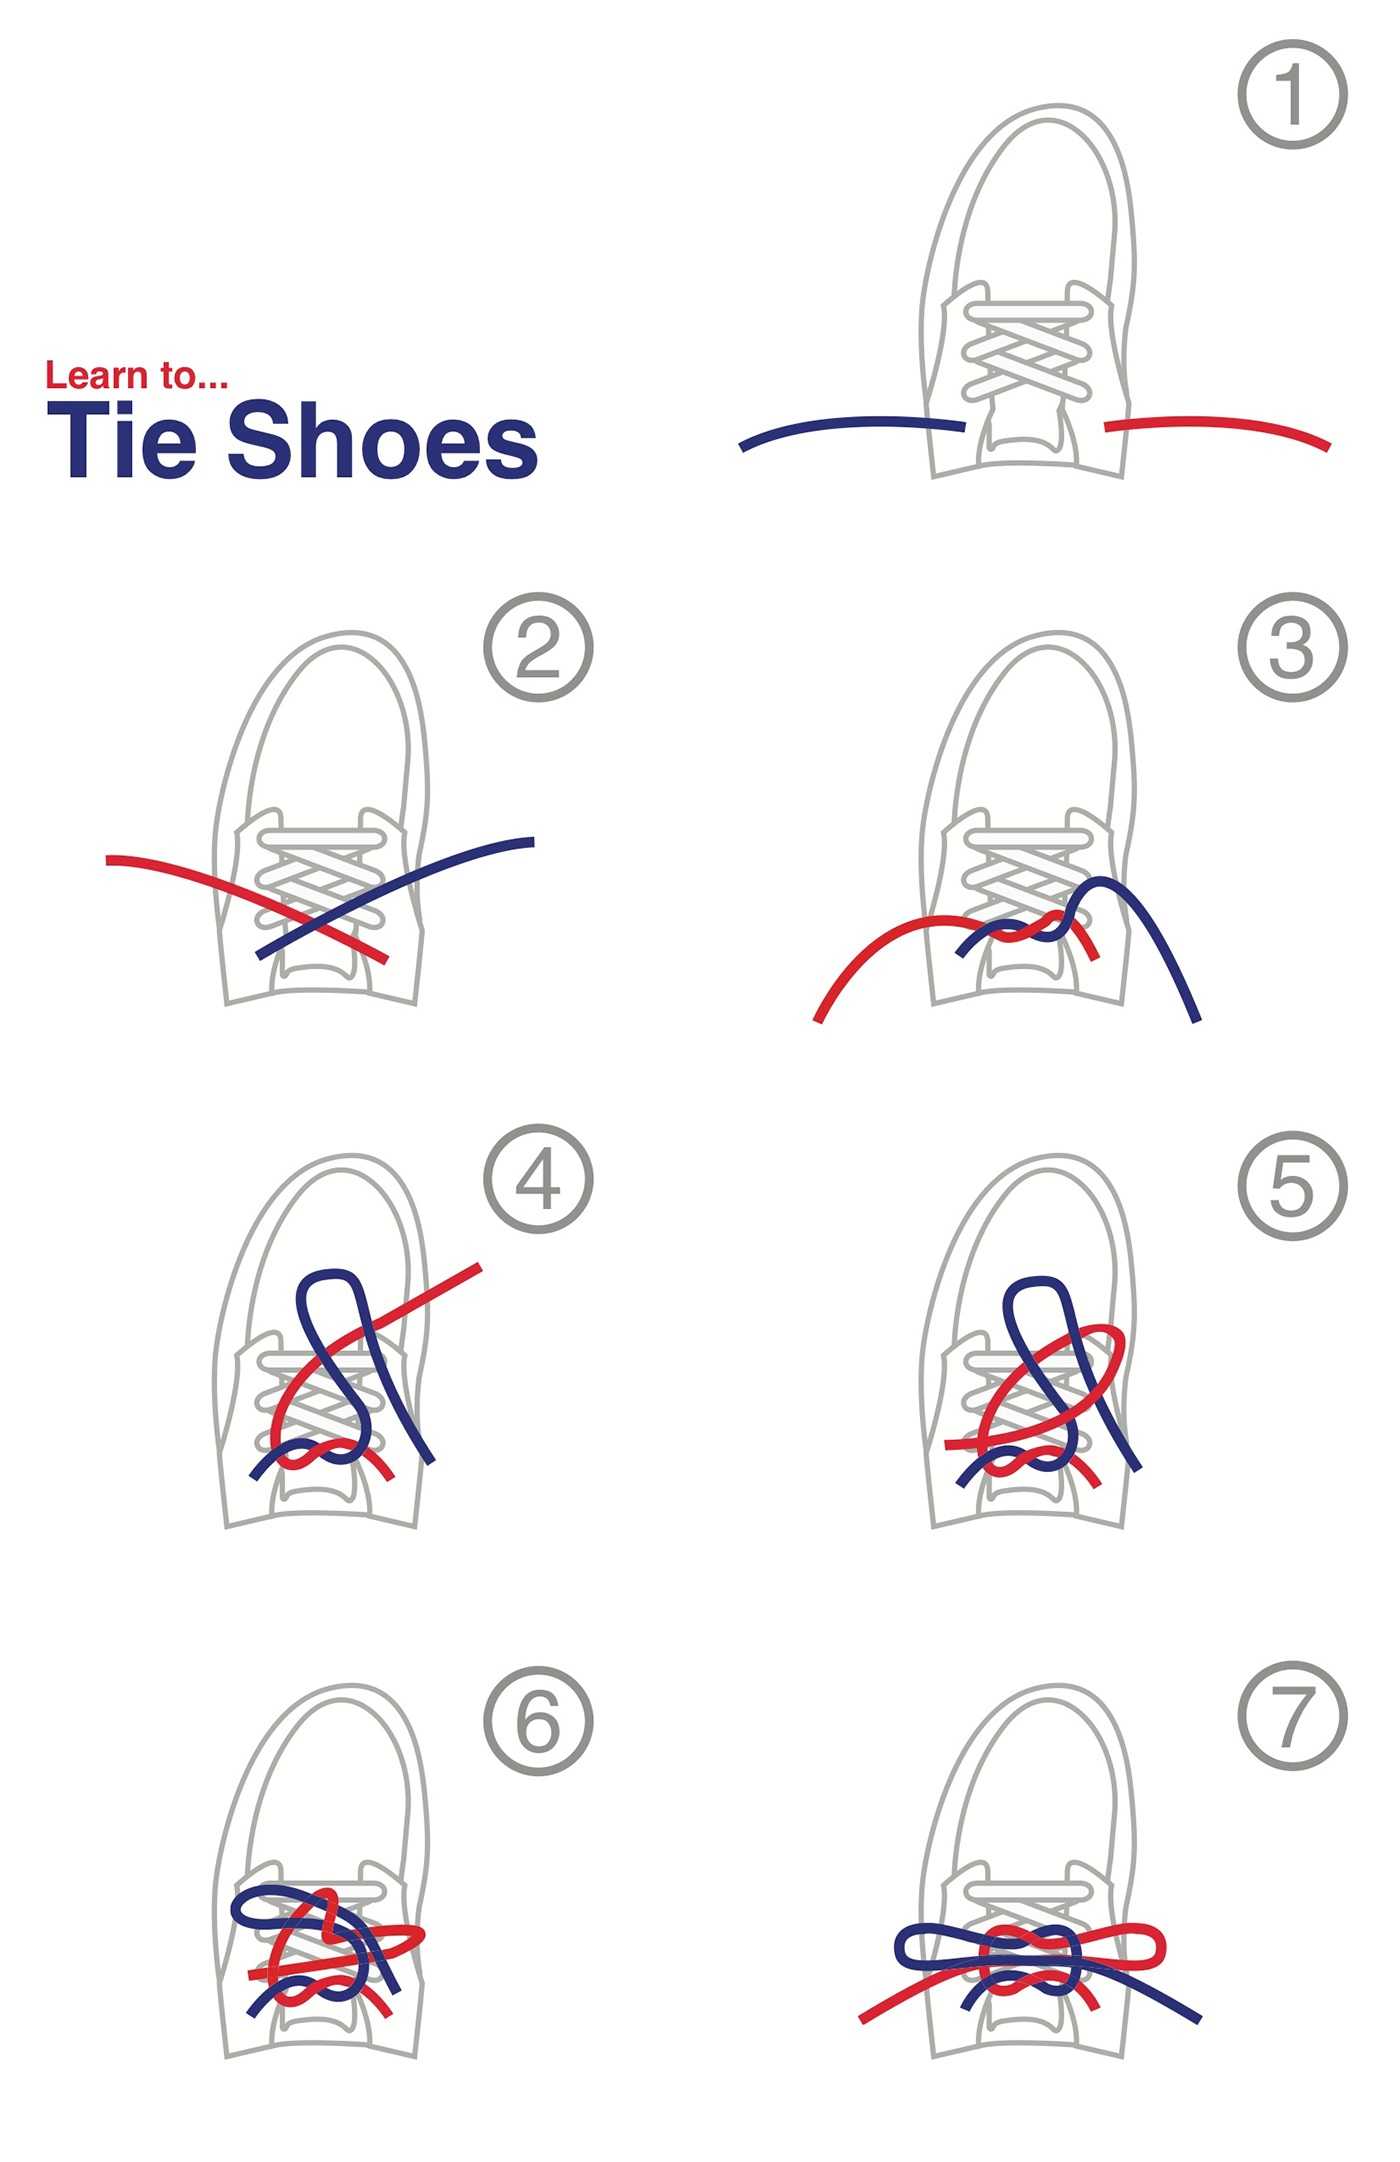 Как завязать шнурки поэтапно. Как завязать шнурки. Как научиться завязывать шнурки. Как научить ребенка завязывать шнурки. Схема завязывания шнурков.